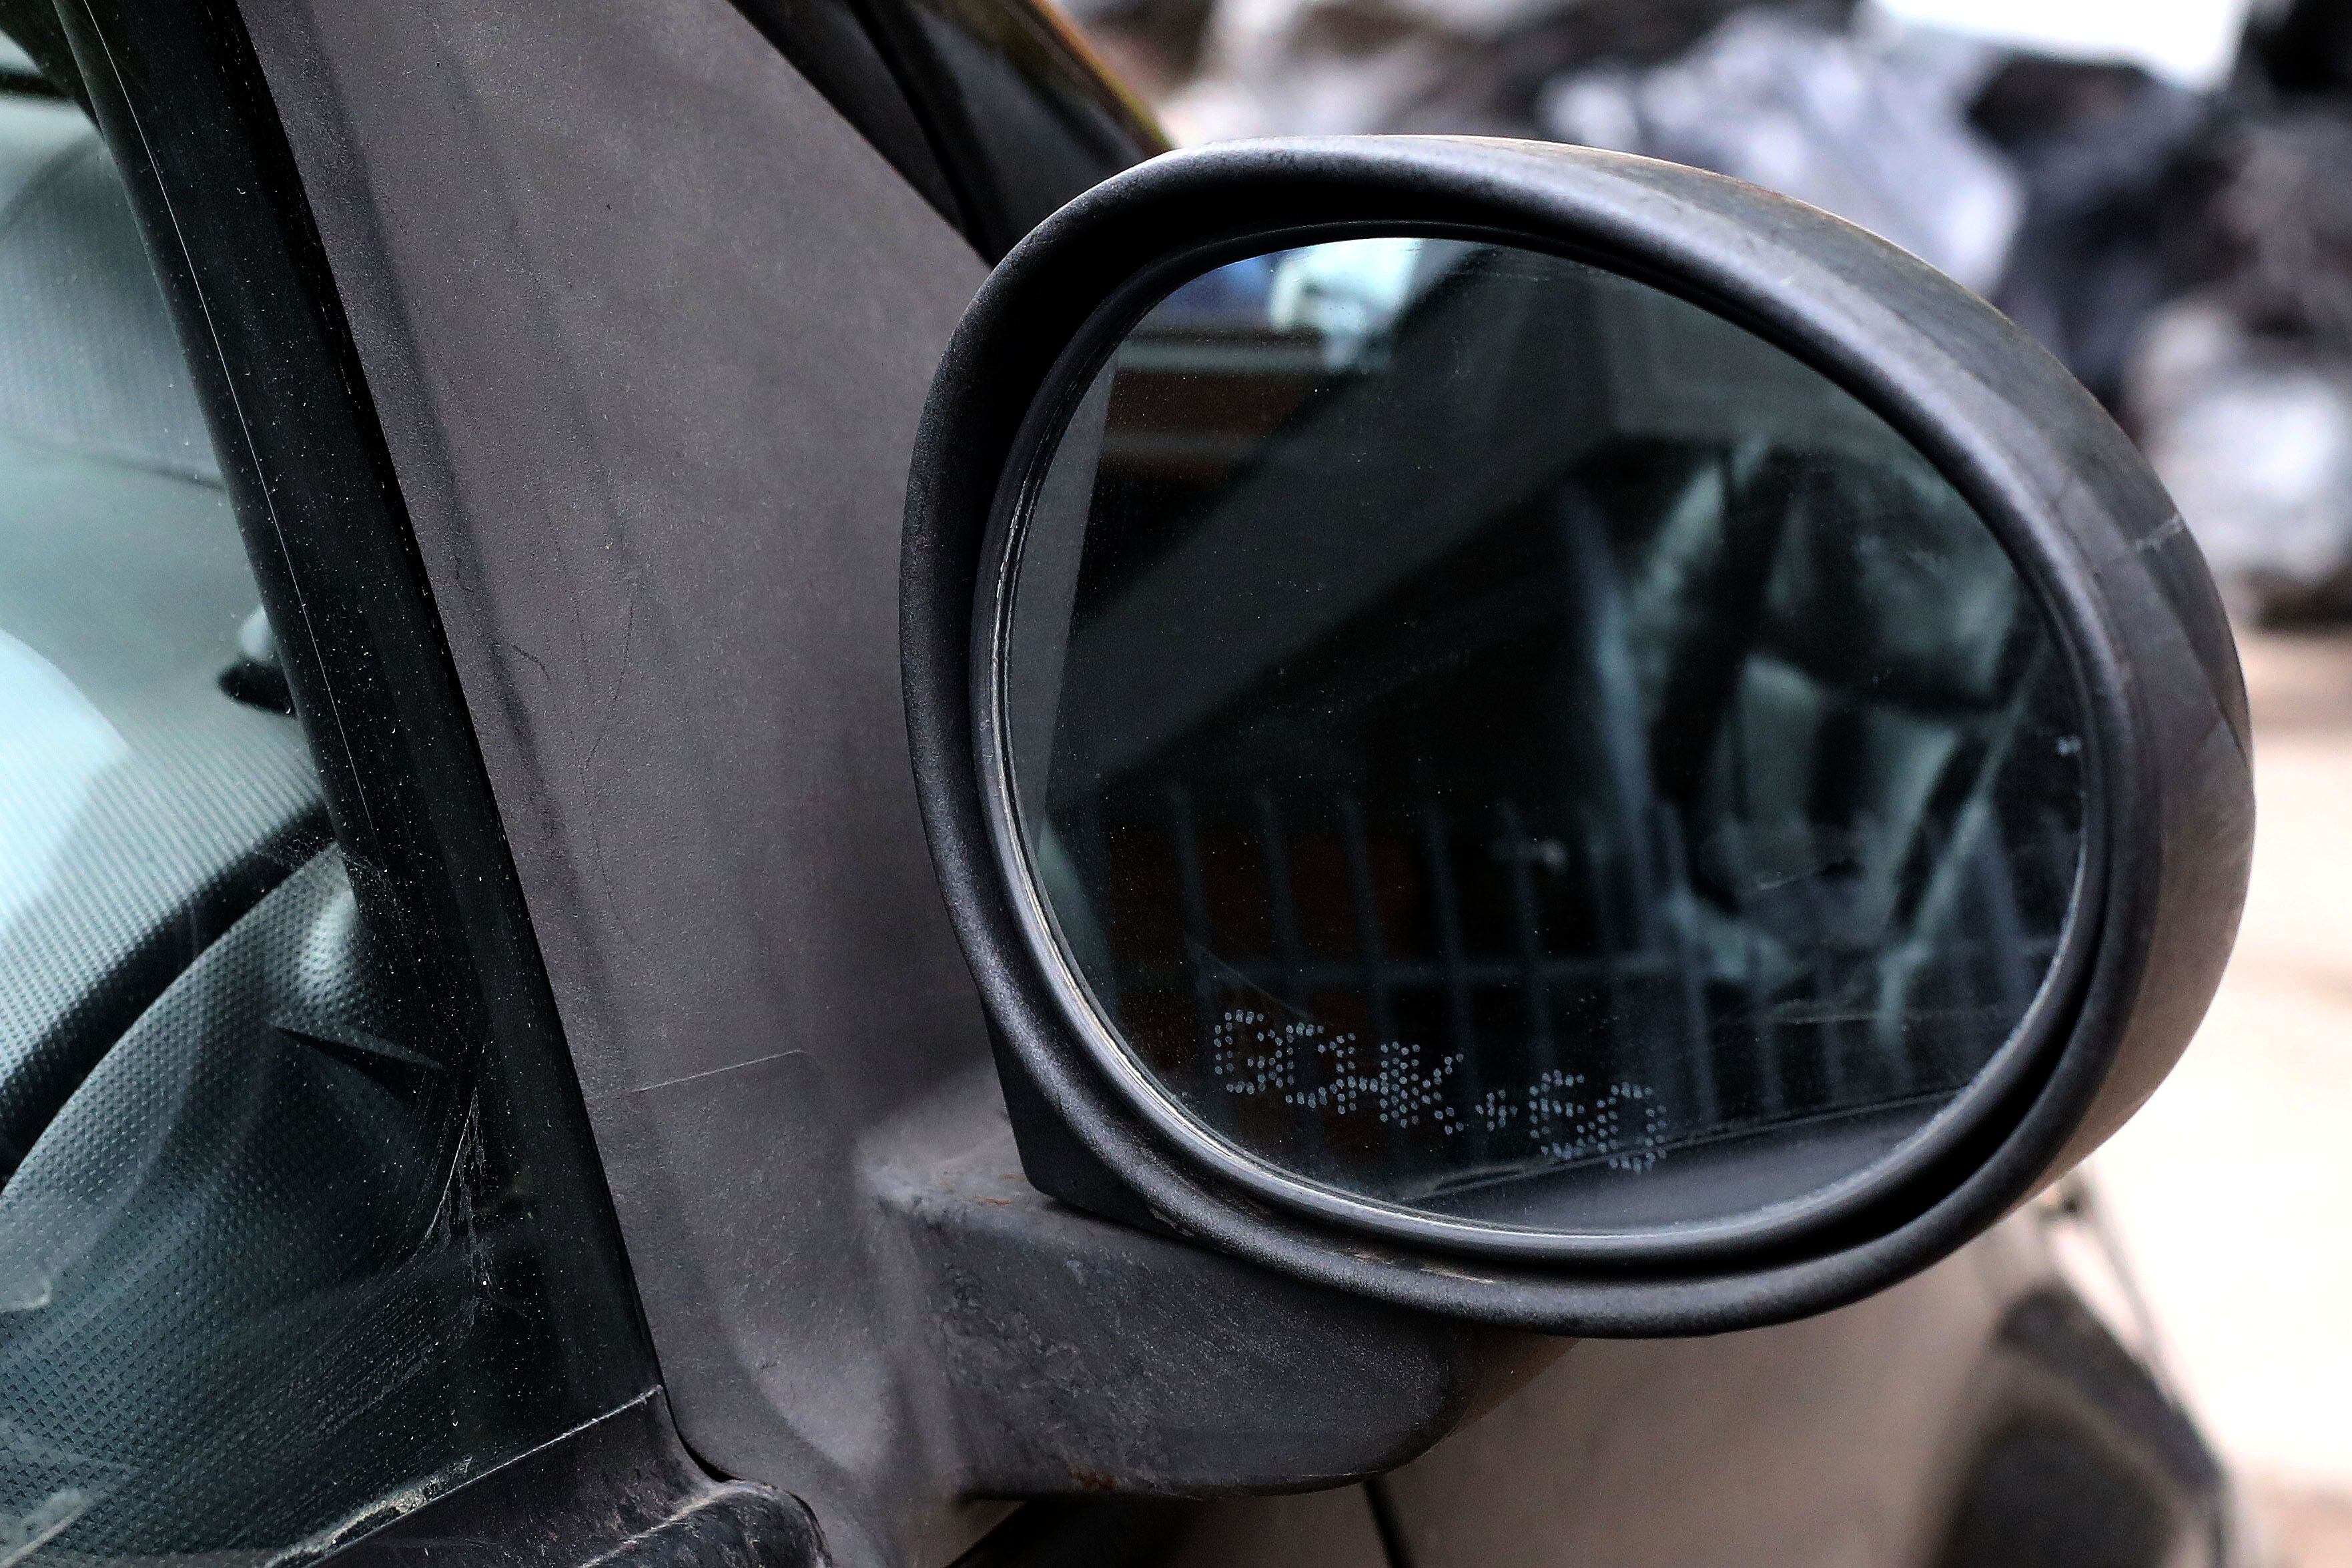 El proyecto que busca eliminar la obligación de grabar la patente en los vidrios de los autos